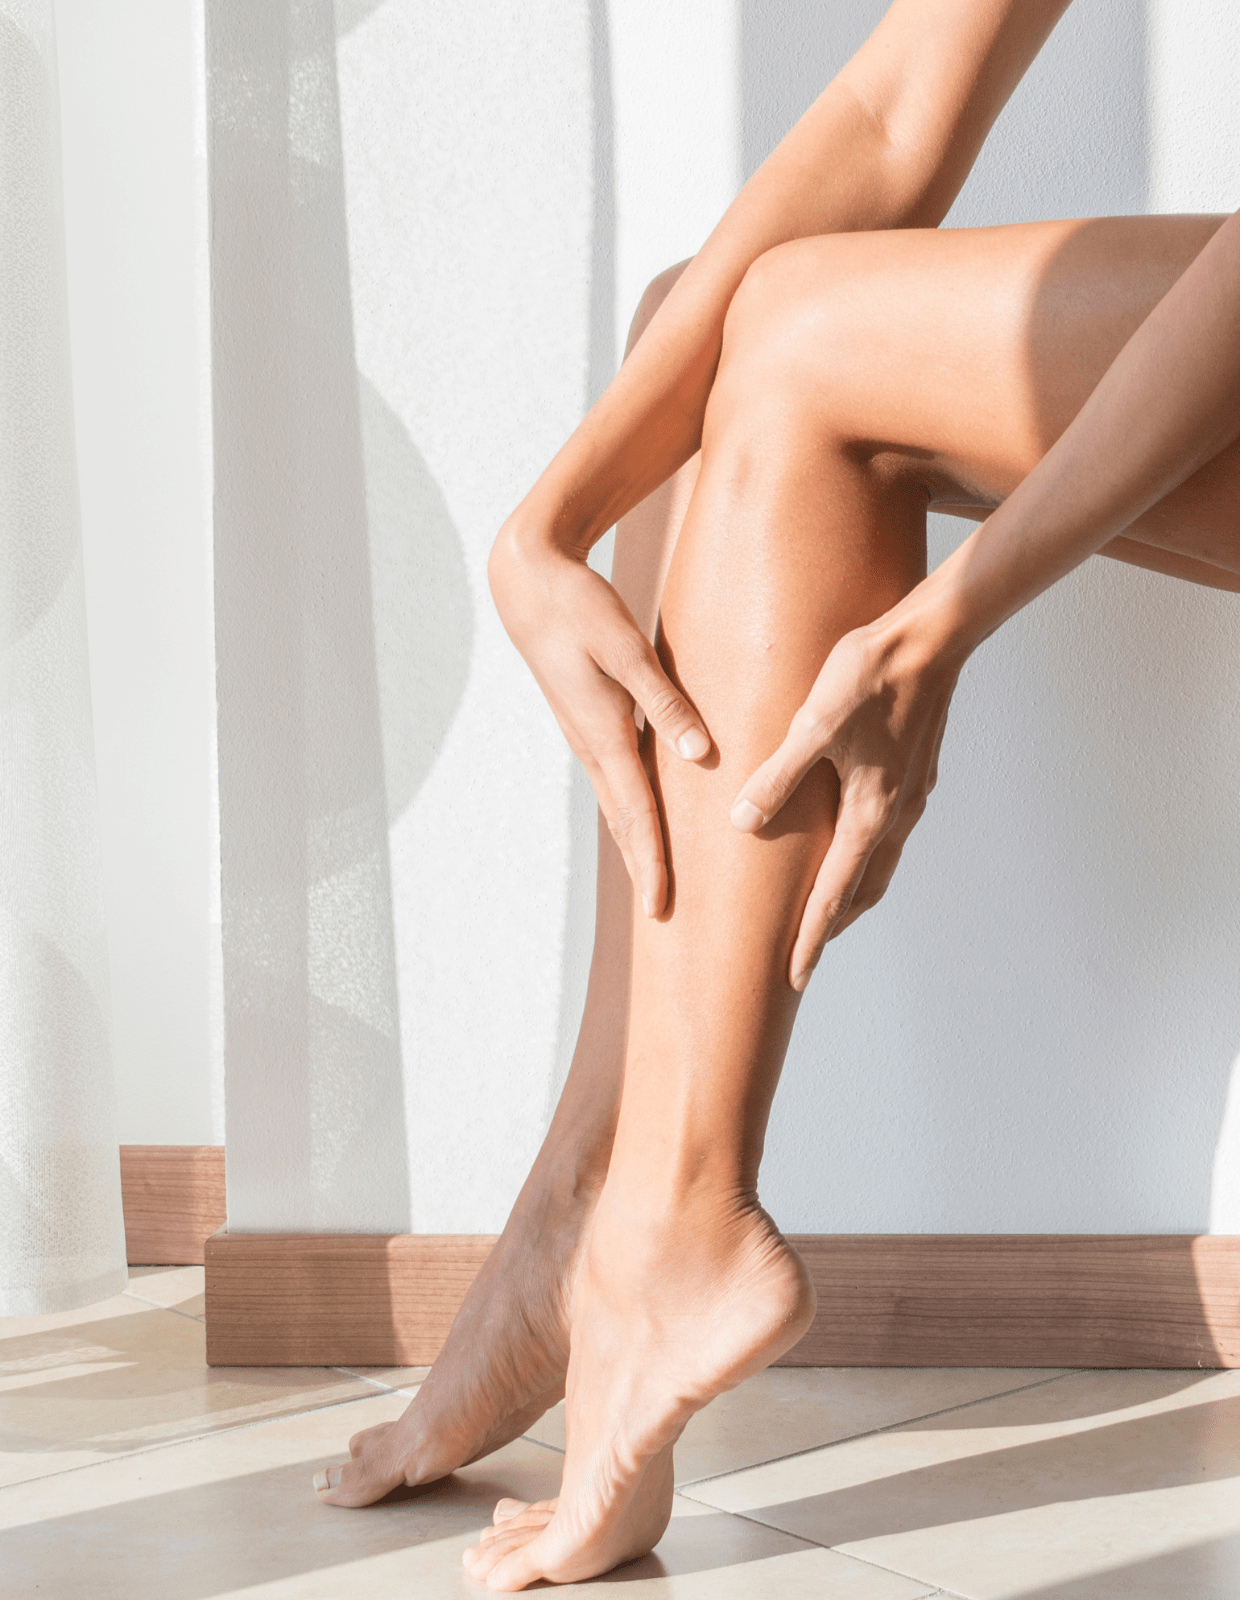 Como minimizar a dor durante a depilação em casa?